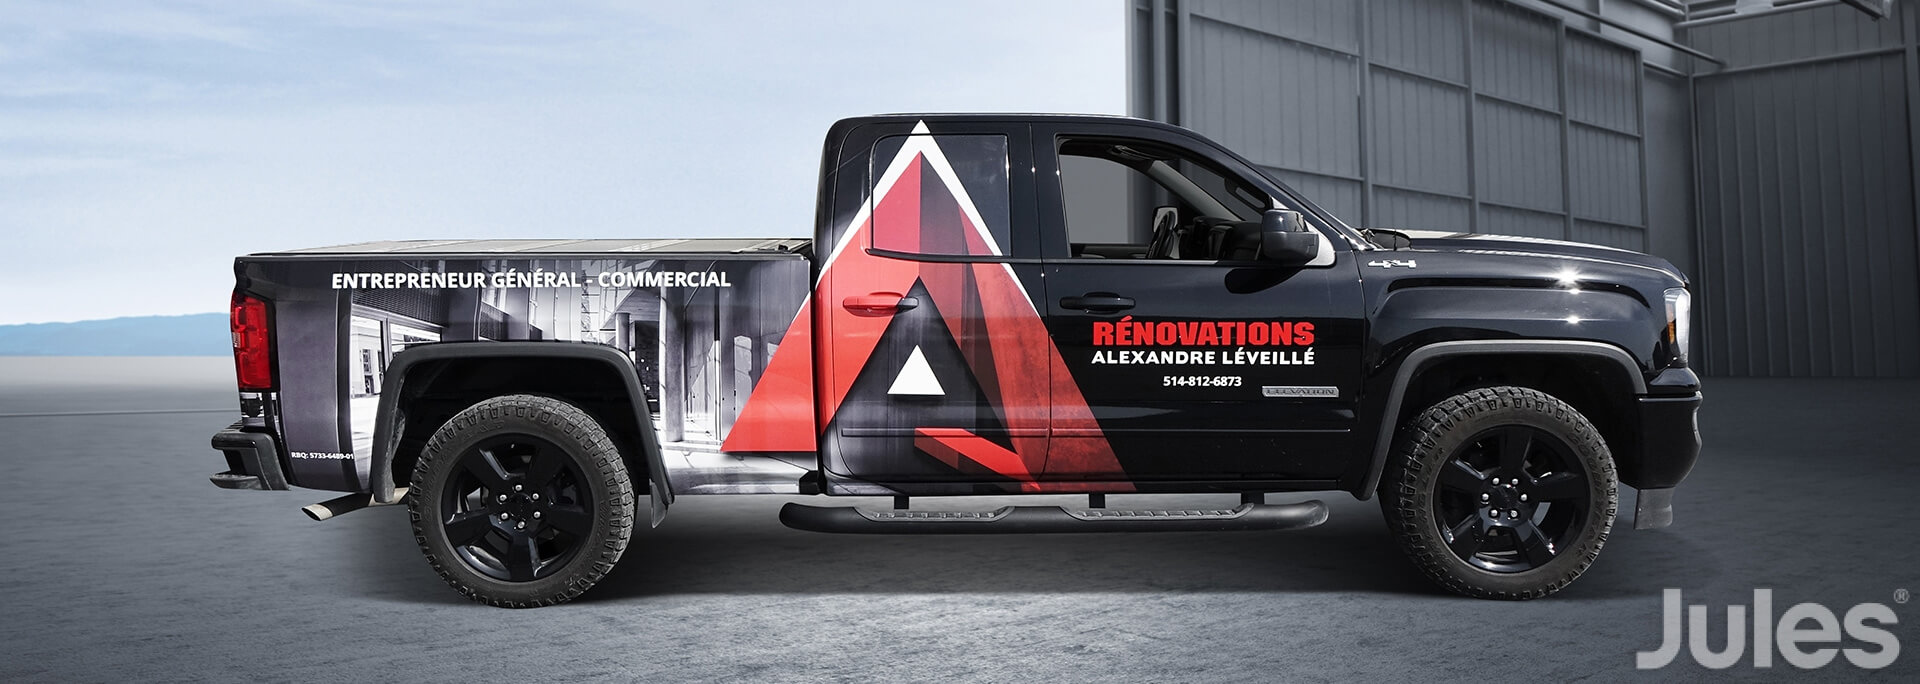 gmc sierra wrap lettrage entrepreneur général construction commercial rénovations alexandre léveillé camion par jules communications 3m